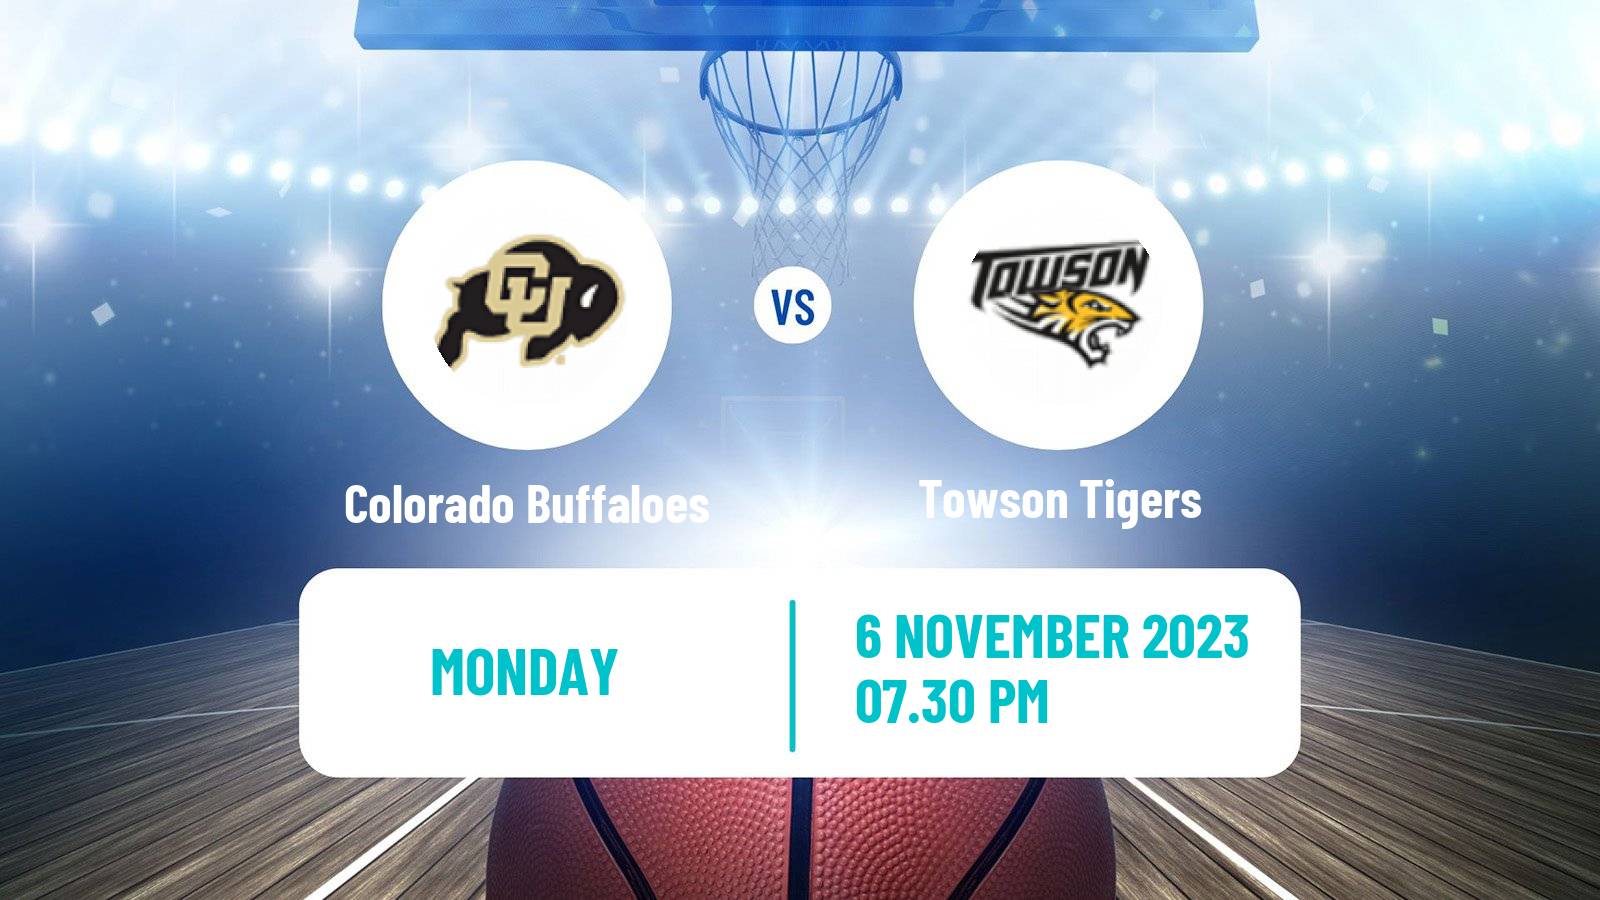 Basketball NCAA College Basketball Colorado Buffaloes - Towson Tigers